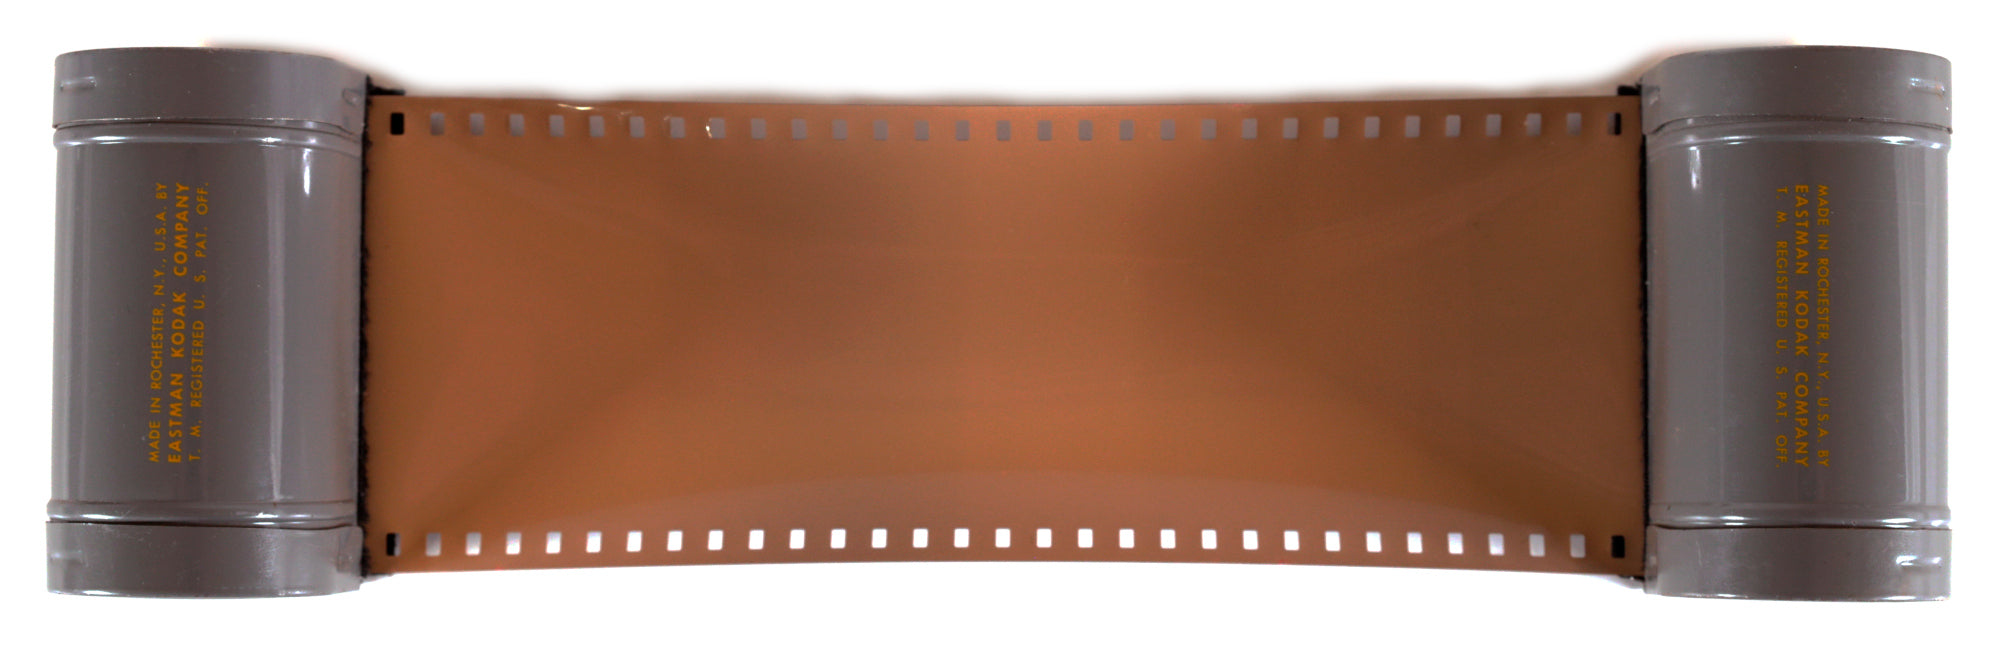 35mm Film Roll Price In India Wide Varieties